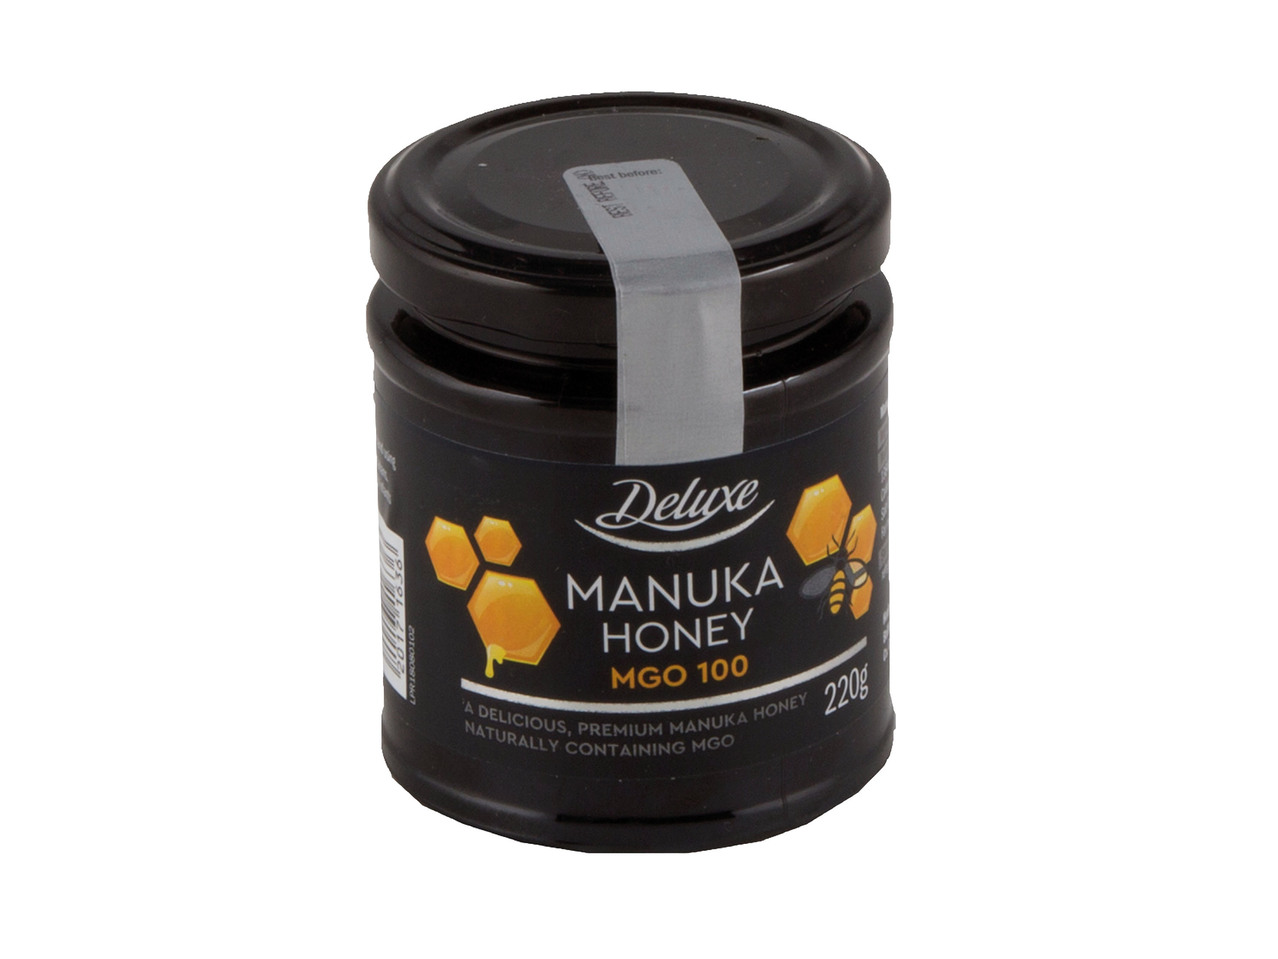 MGO 100 Manuka Honey